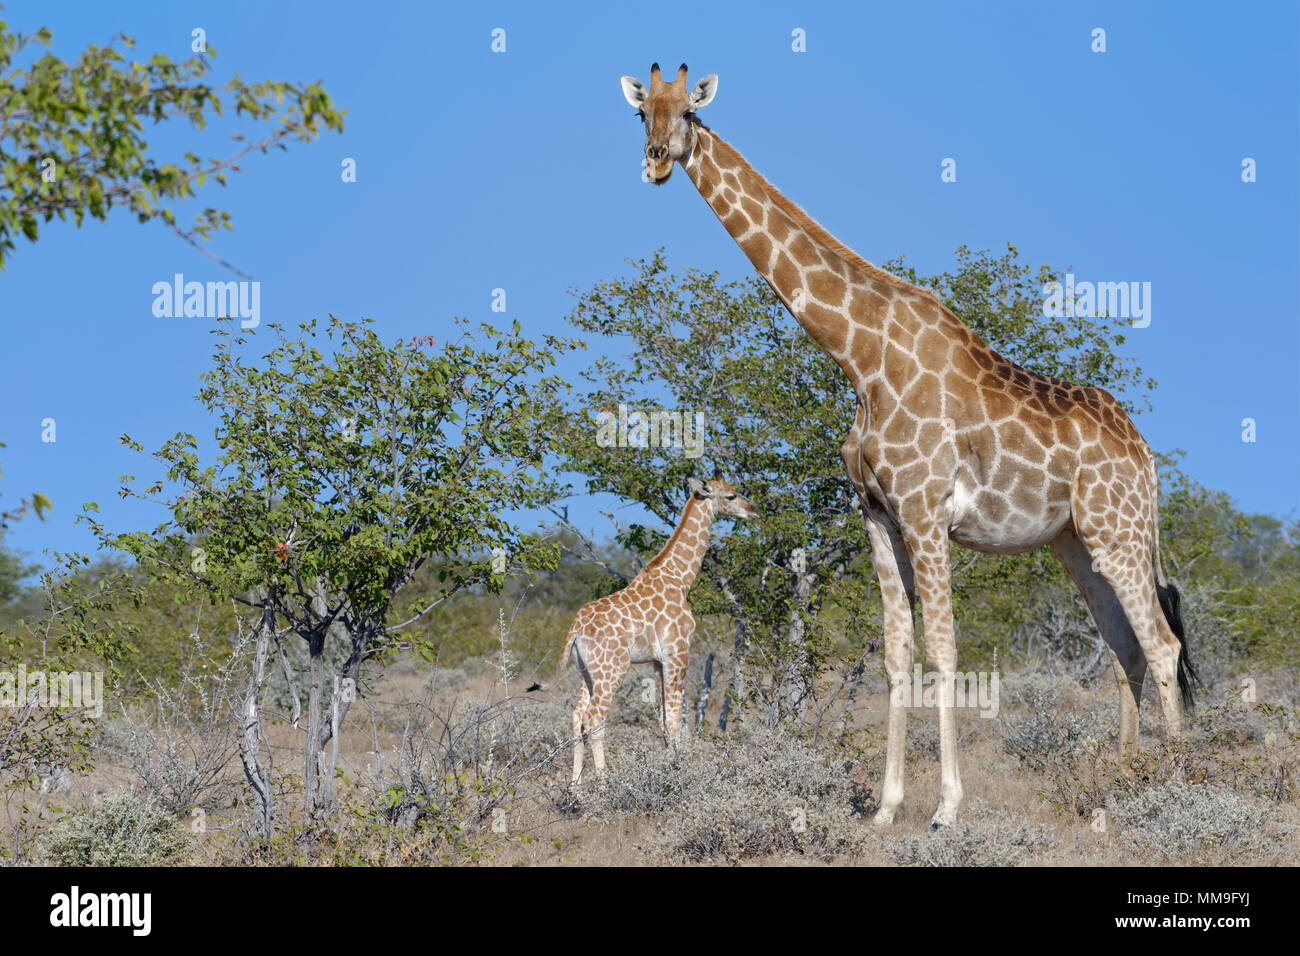 Namibischen Giraffen oder angolanischen Giraffen (Giraffa Camelopardalis angolensis), Mutter mit Baby, Etosha National Park, Namibia, Afrika Stockfoto